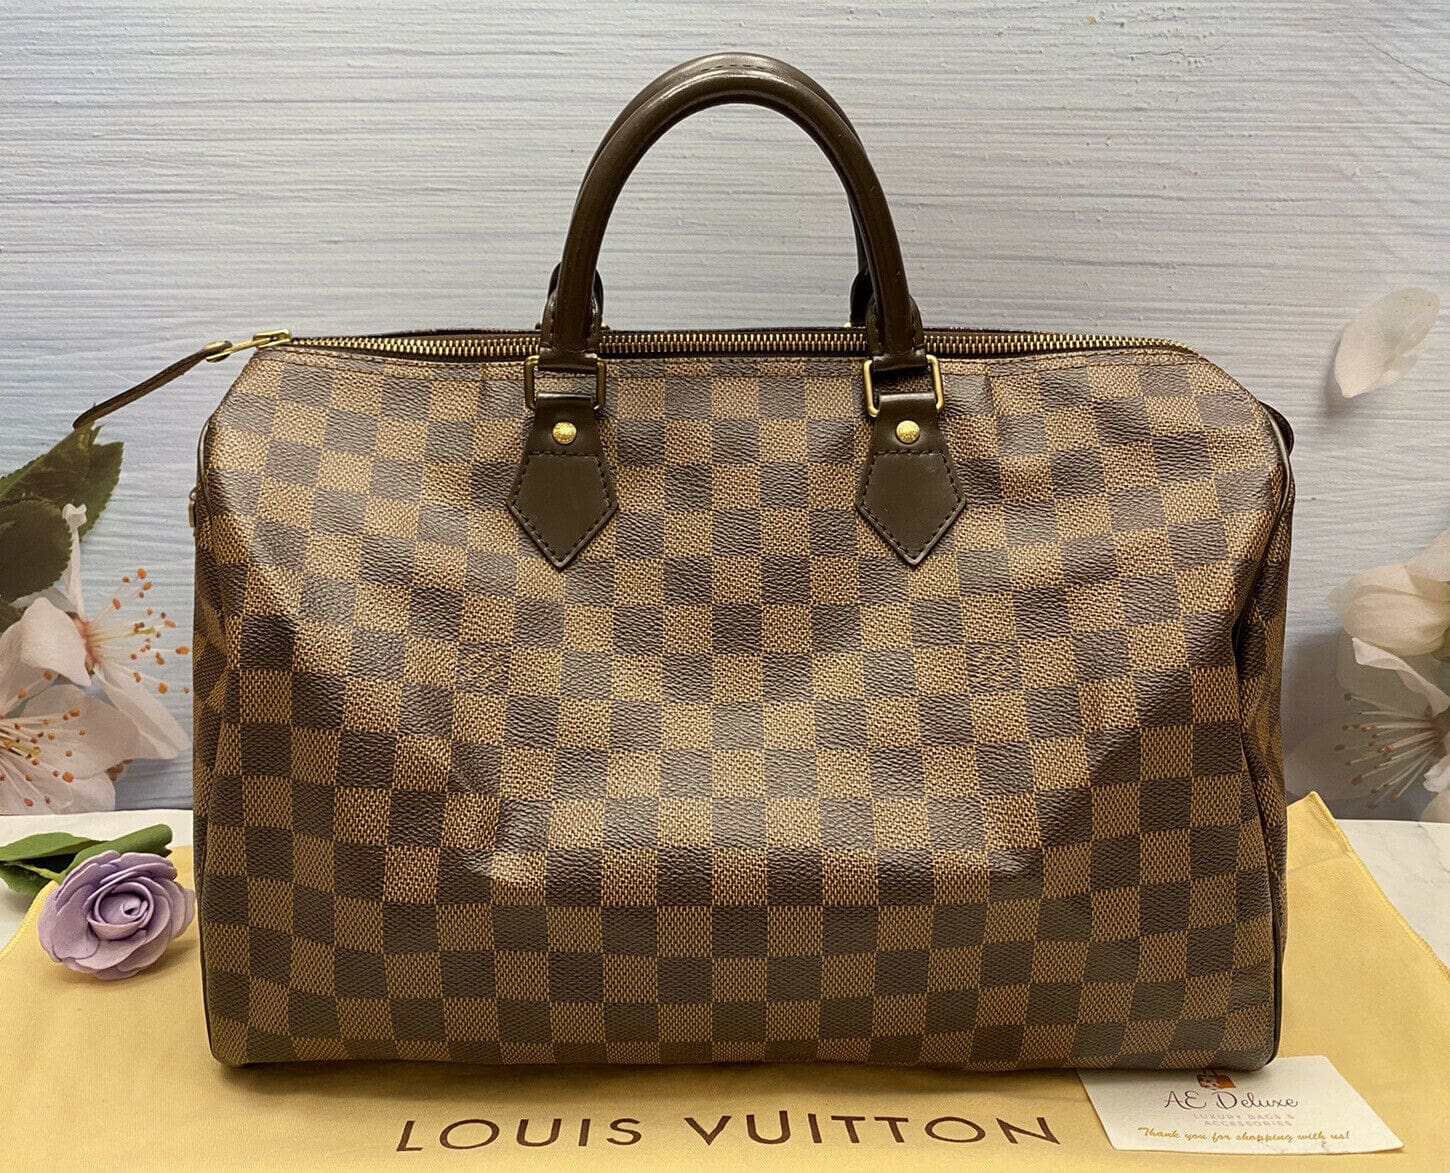 Louis Vuitton, Bags, Louis Vuitton Damier Ebene Speedy 35 Handbag